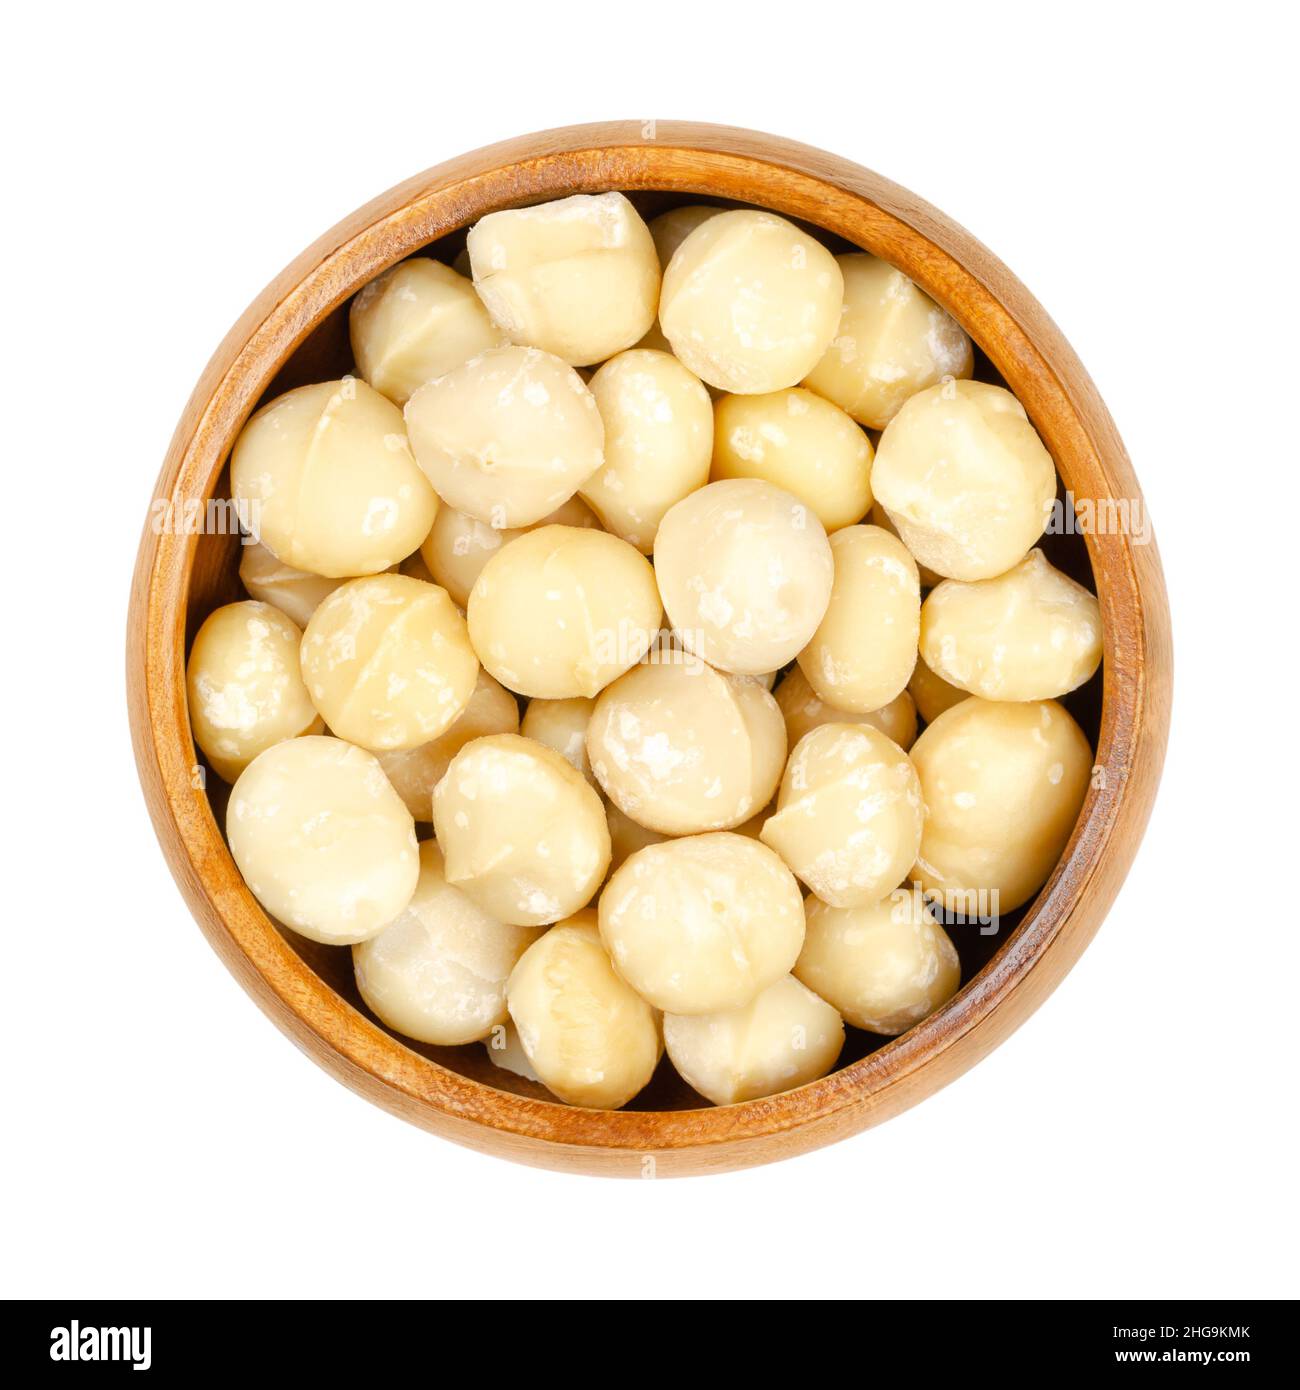 Noci di macadamia sgusciate ed essiccate, in una ciotola di legno. Chiamato anche Queensland, Bush, maroochi, bauple o Hawaii Nut. Snack sano. Foto Stock